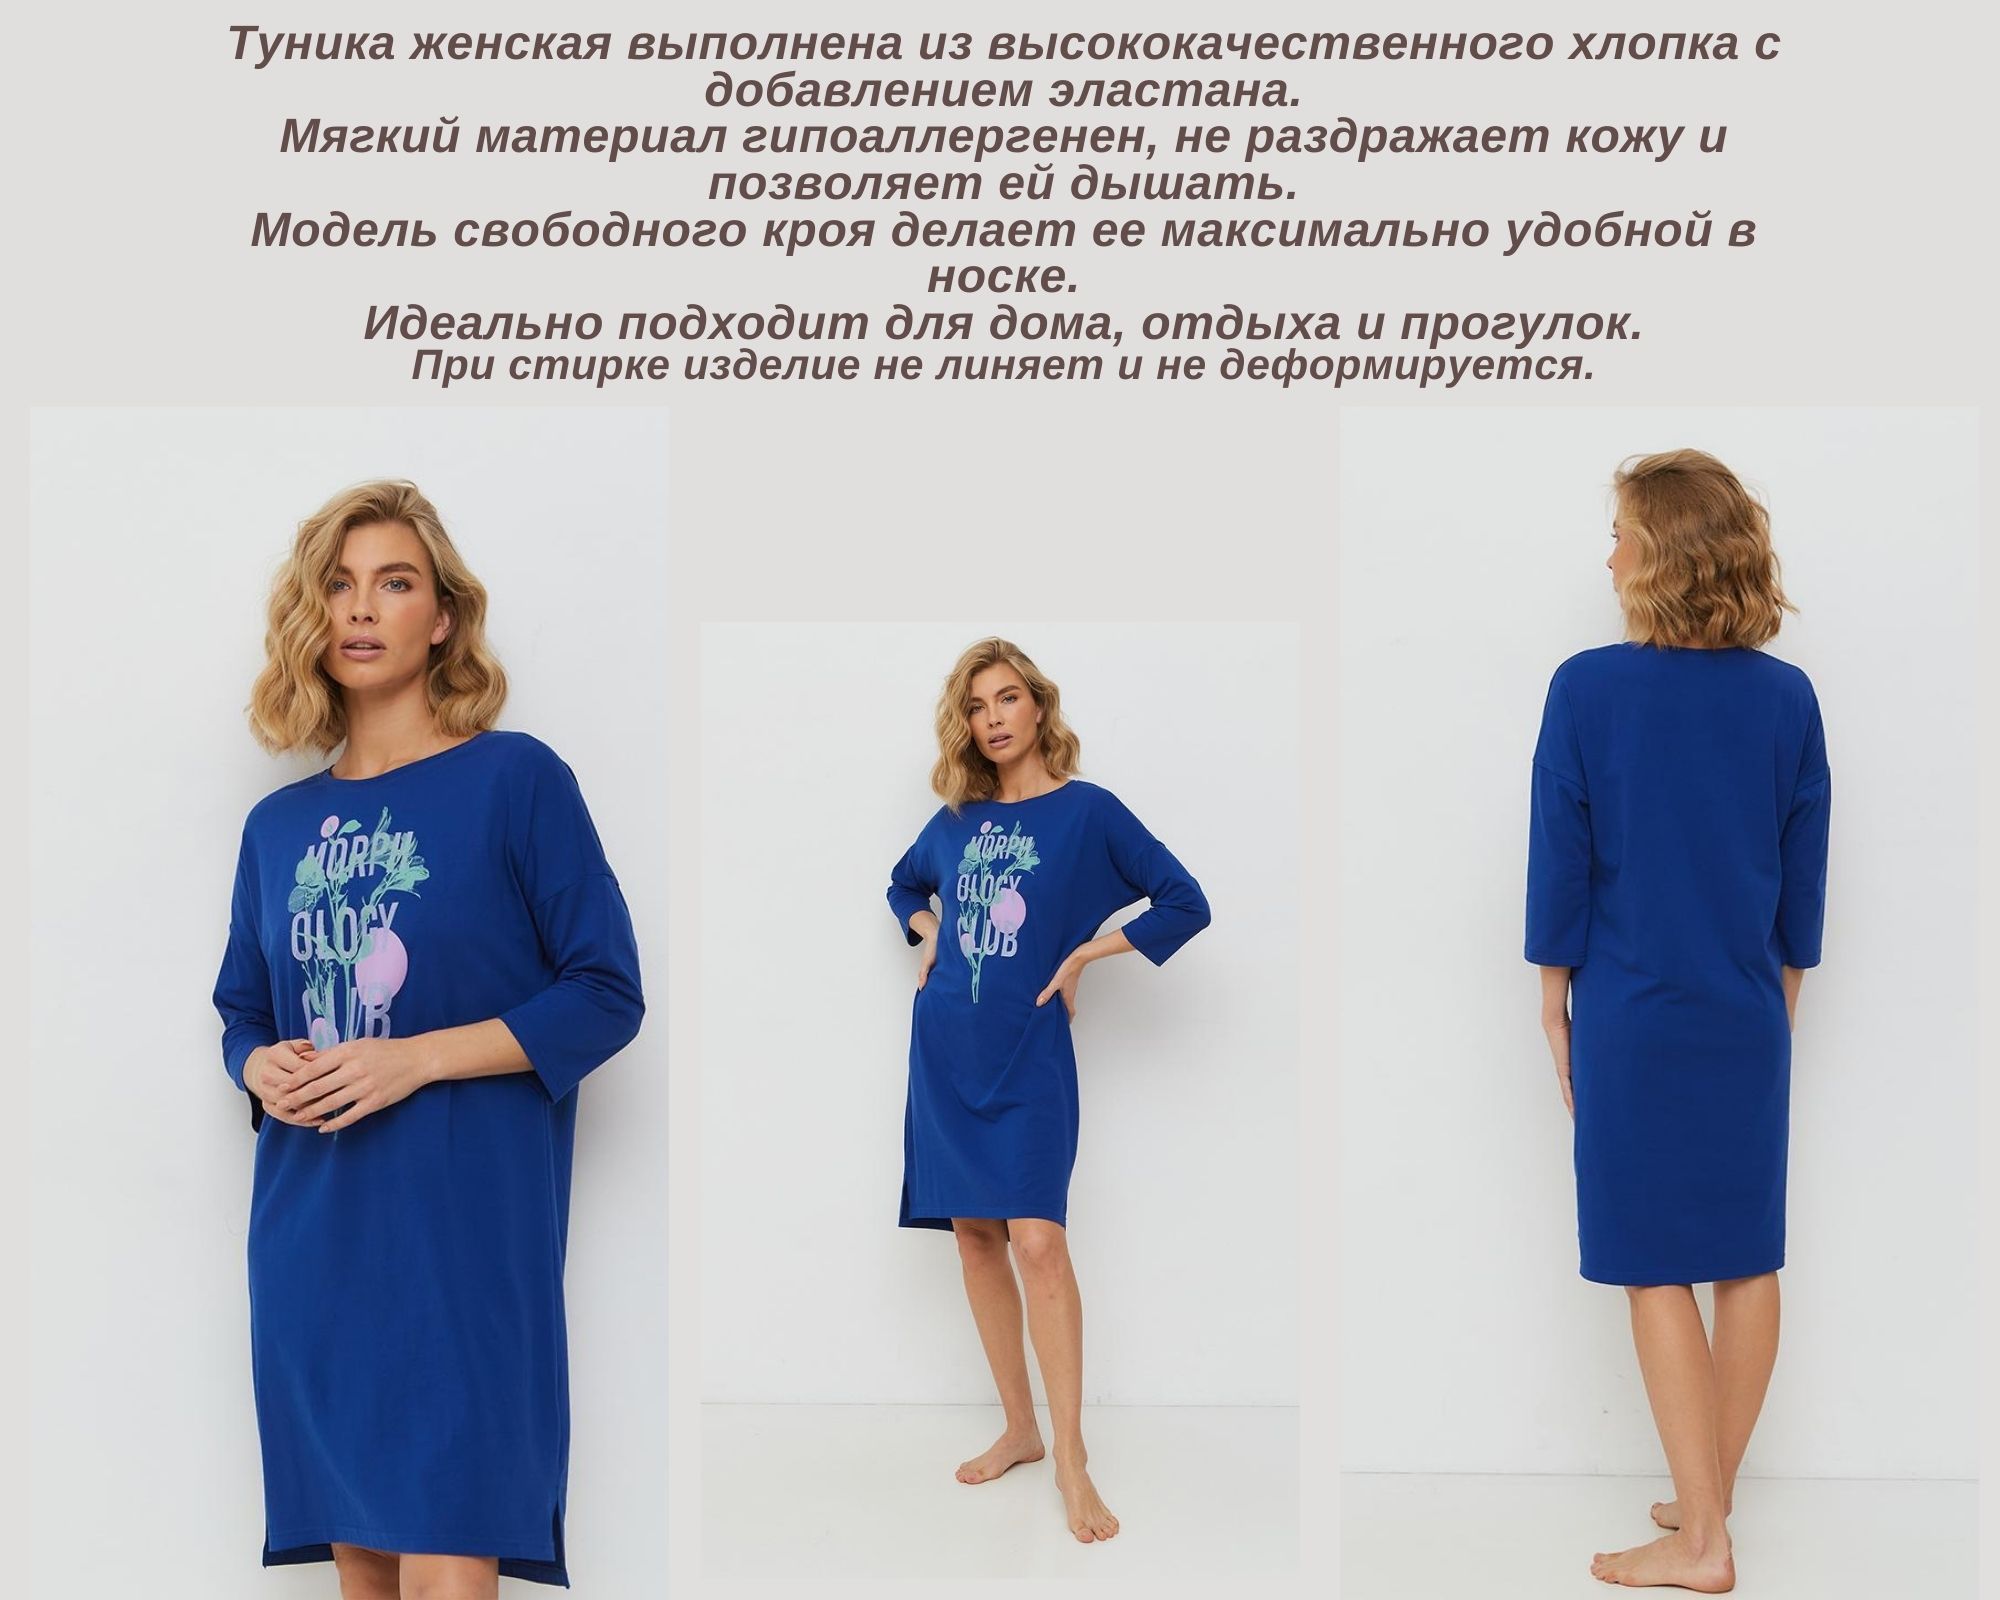 Российский бренд Наше предлагает ассортимент повседневной женской одежды для сна и отдыха, отвечающий самым взыскательным вкусам наших покупательниц